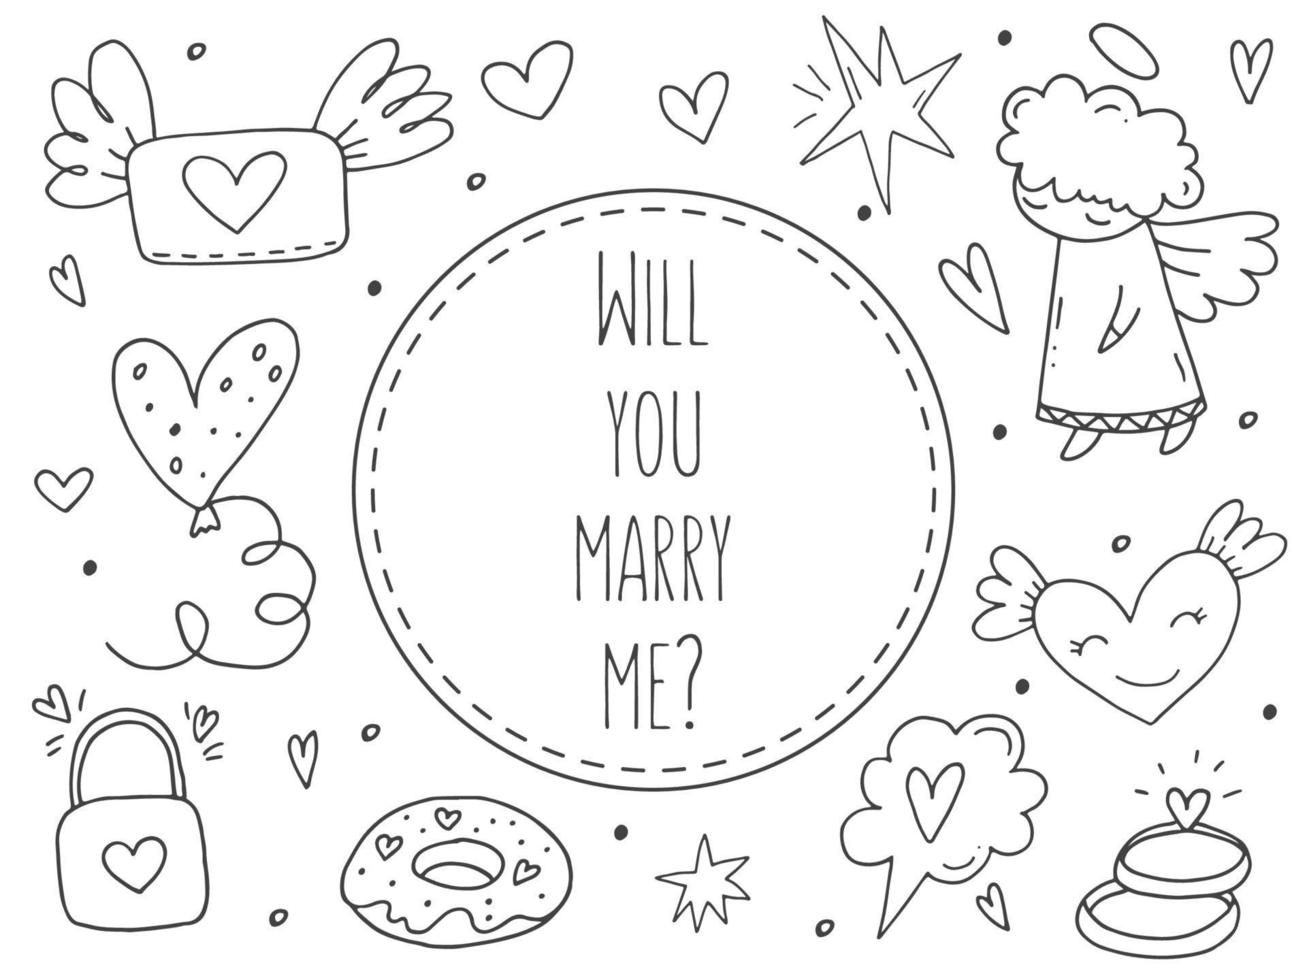 grand ensemble d'éléments de doodle mignons dessinés à la main sur l'amour. autocollants de message pour les applications. icônes pour la saint valentin, les événements romantiques et le mariage. vecteur